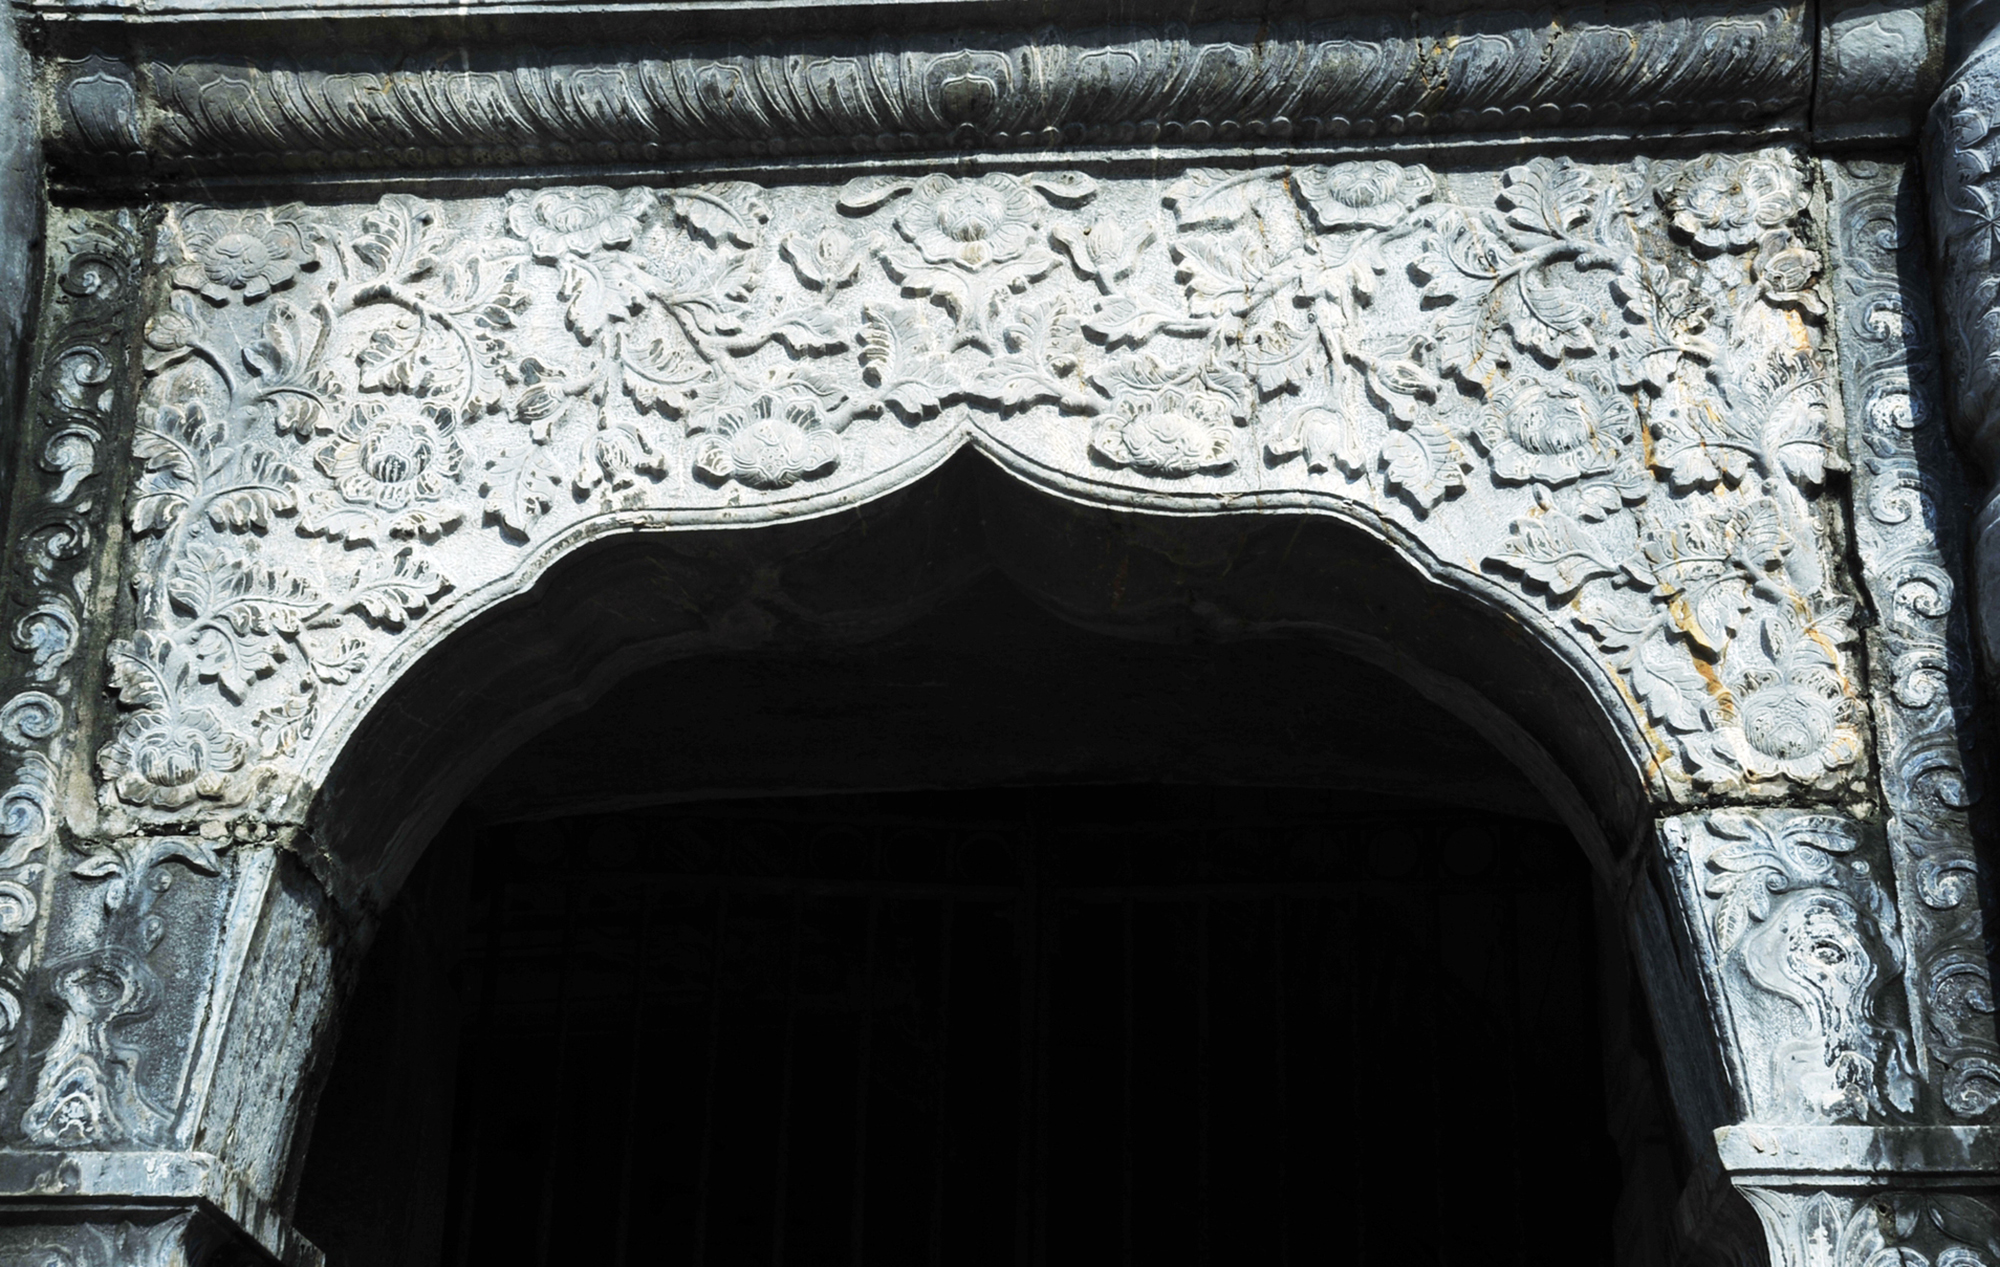 Chiêm ngắm ngôi nhà thờ được làm hoàn toàn bằng đá ở Ninh Bình - Ảnh 13.